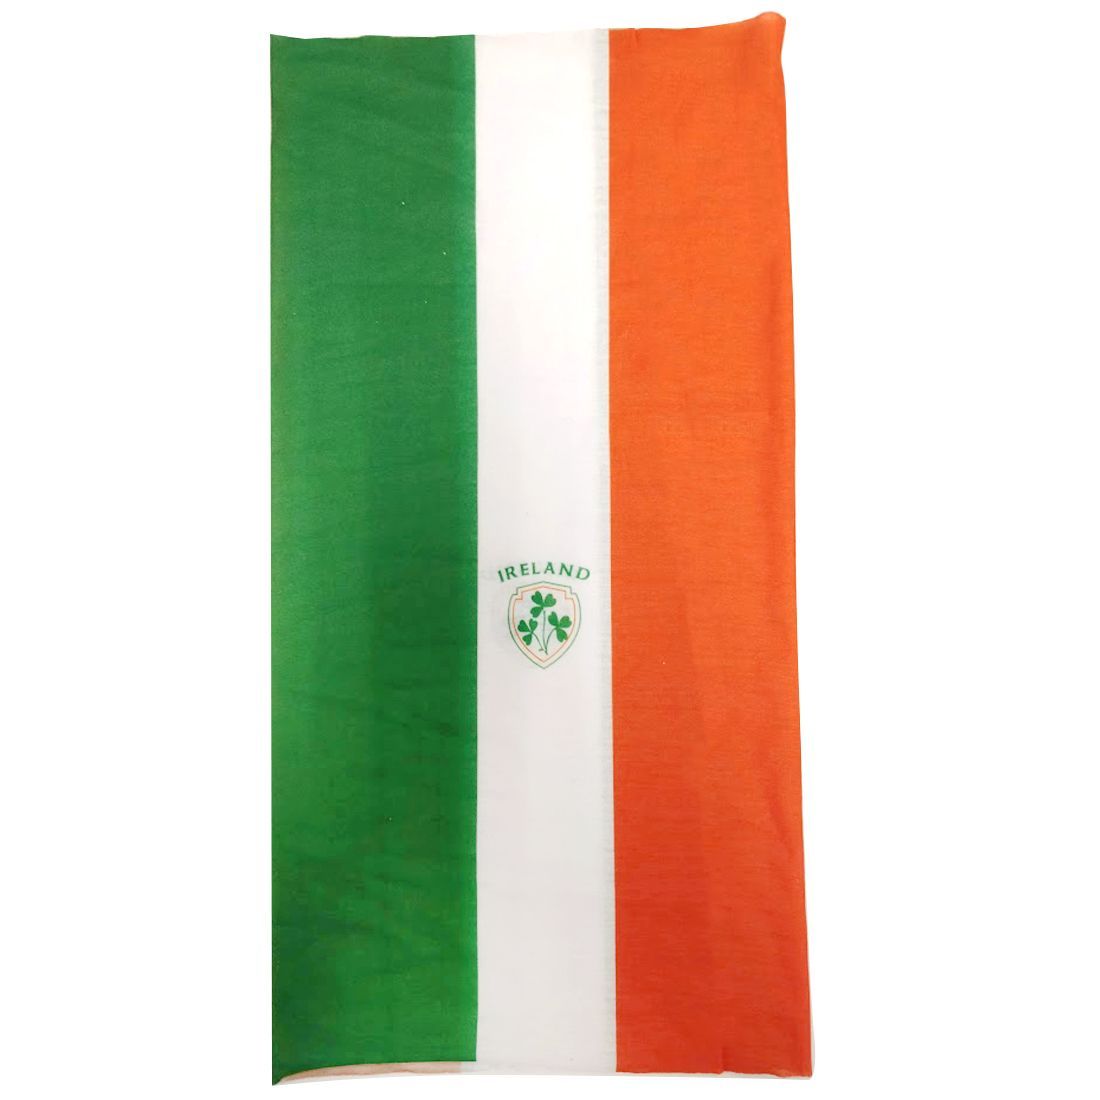 Multifunktionales Tuch in den irischen Flaggenfarben